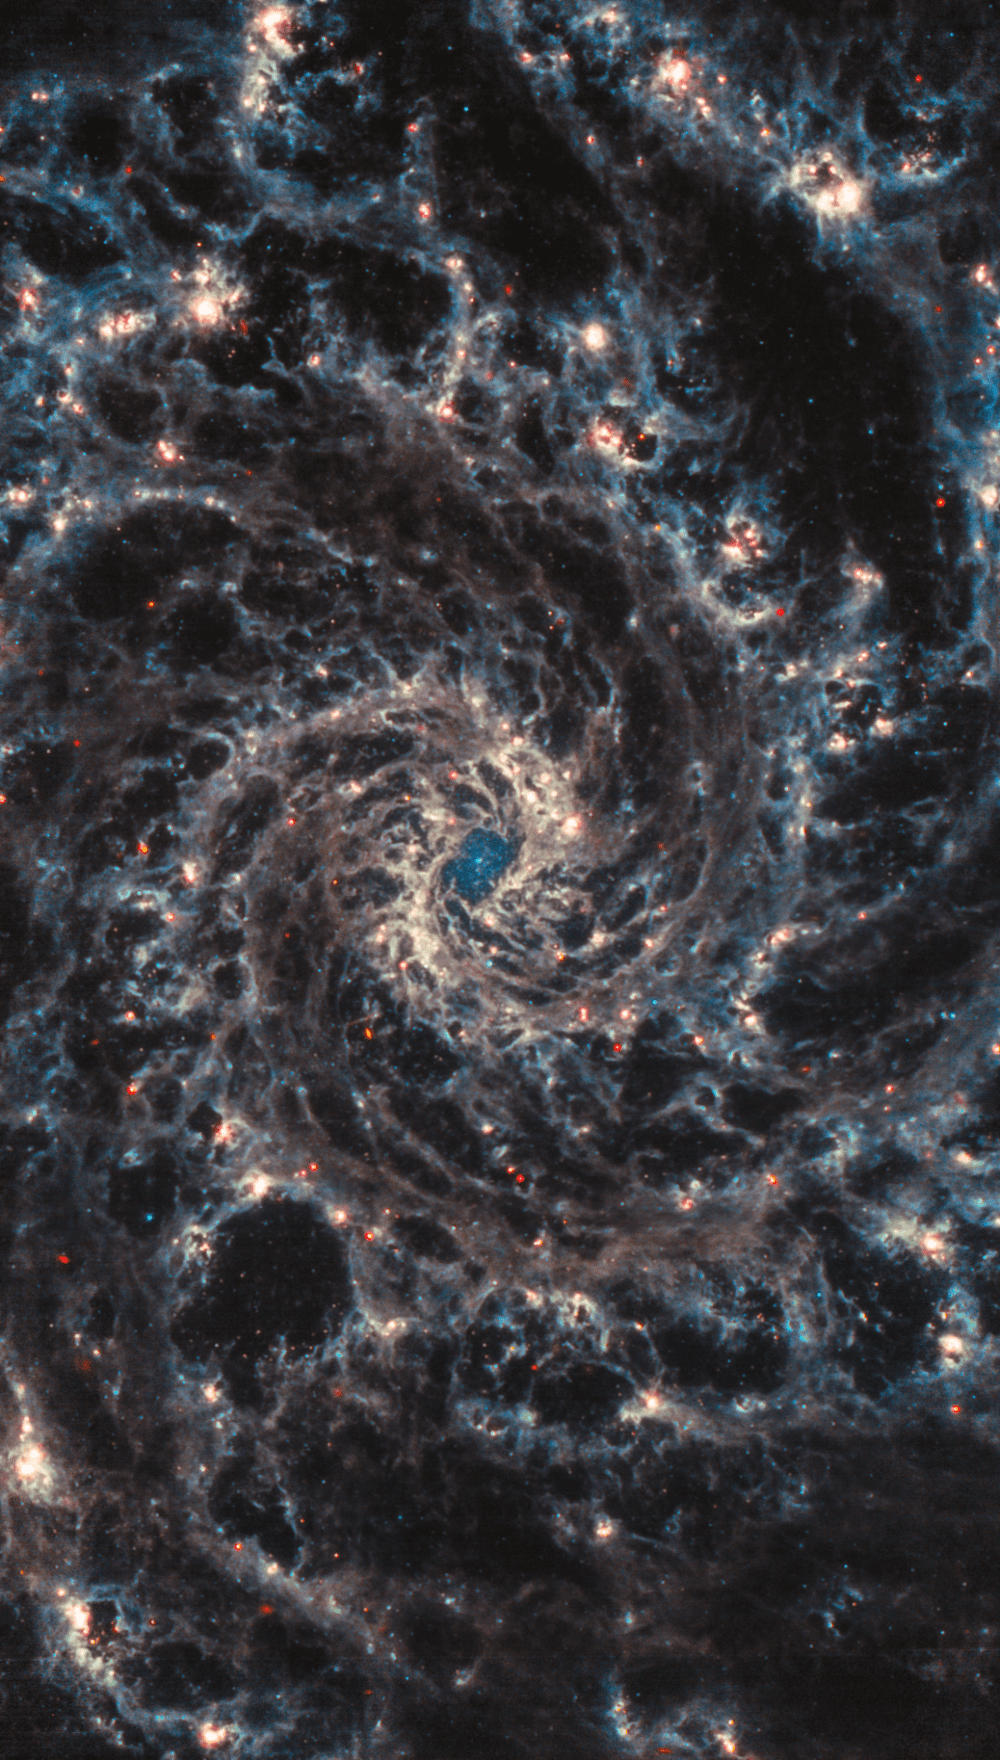 韦伯望远镜在中红外波段拍摄的旋涡星系M74中心部分 | NASA/ESA/CSA/Judy Schmidt<br>